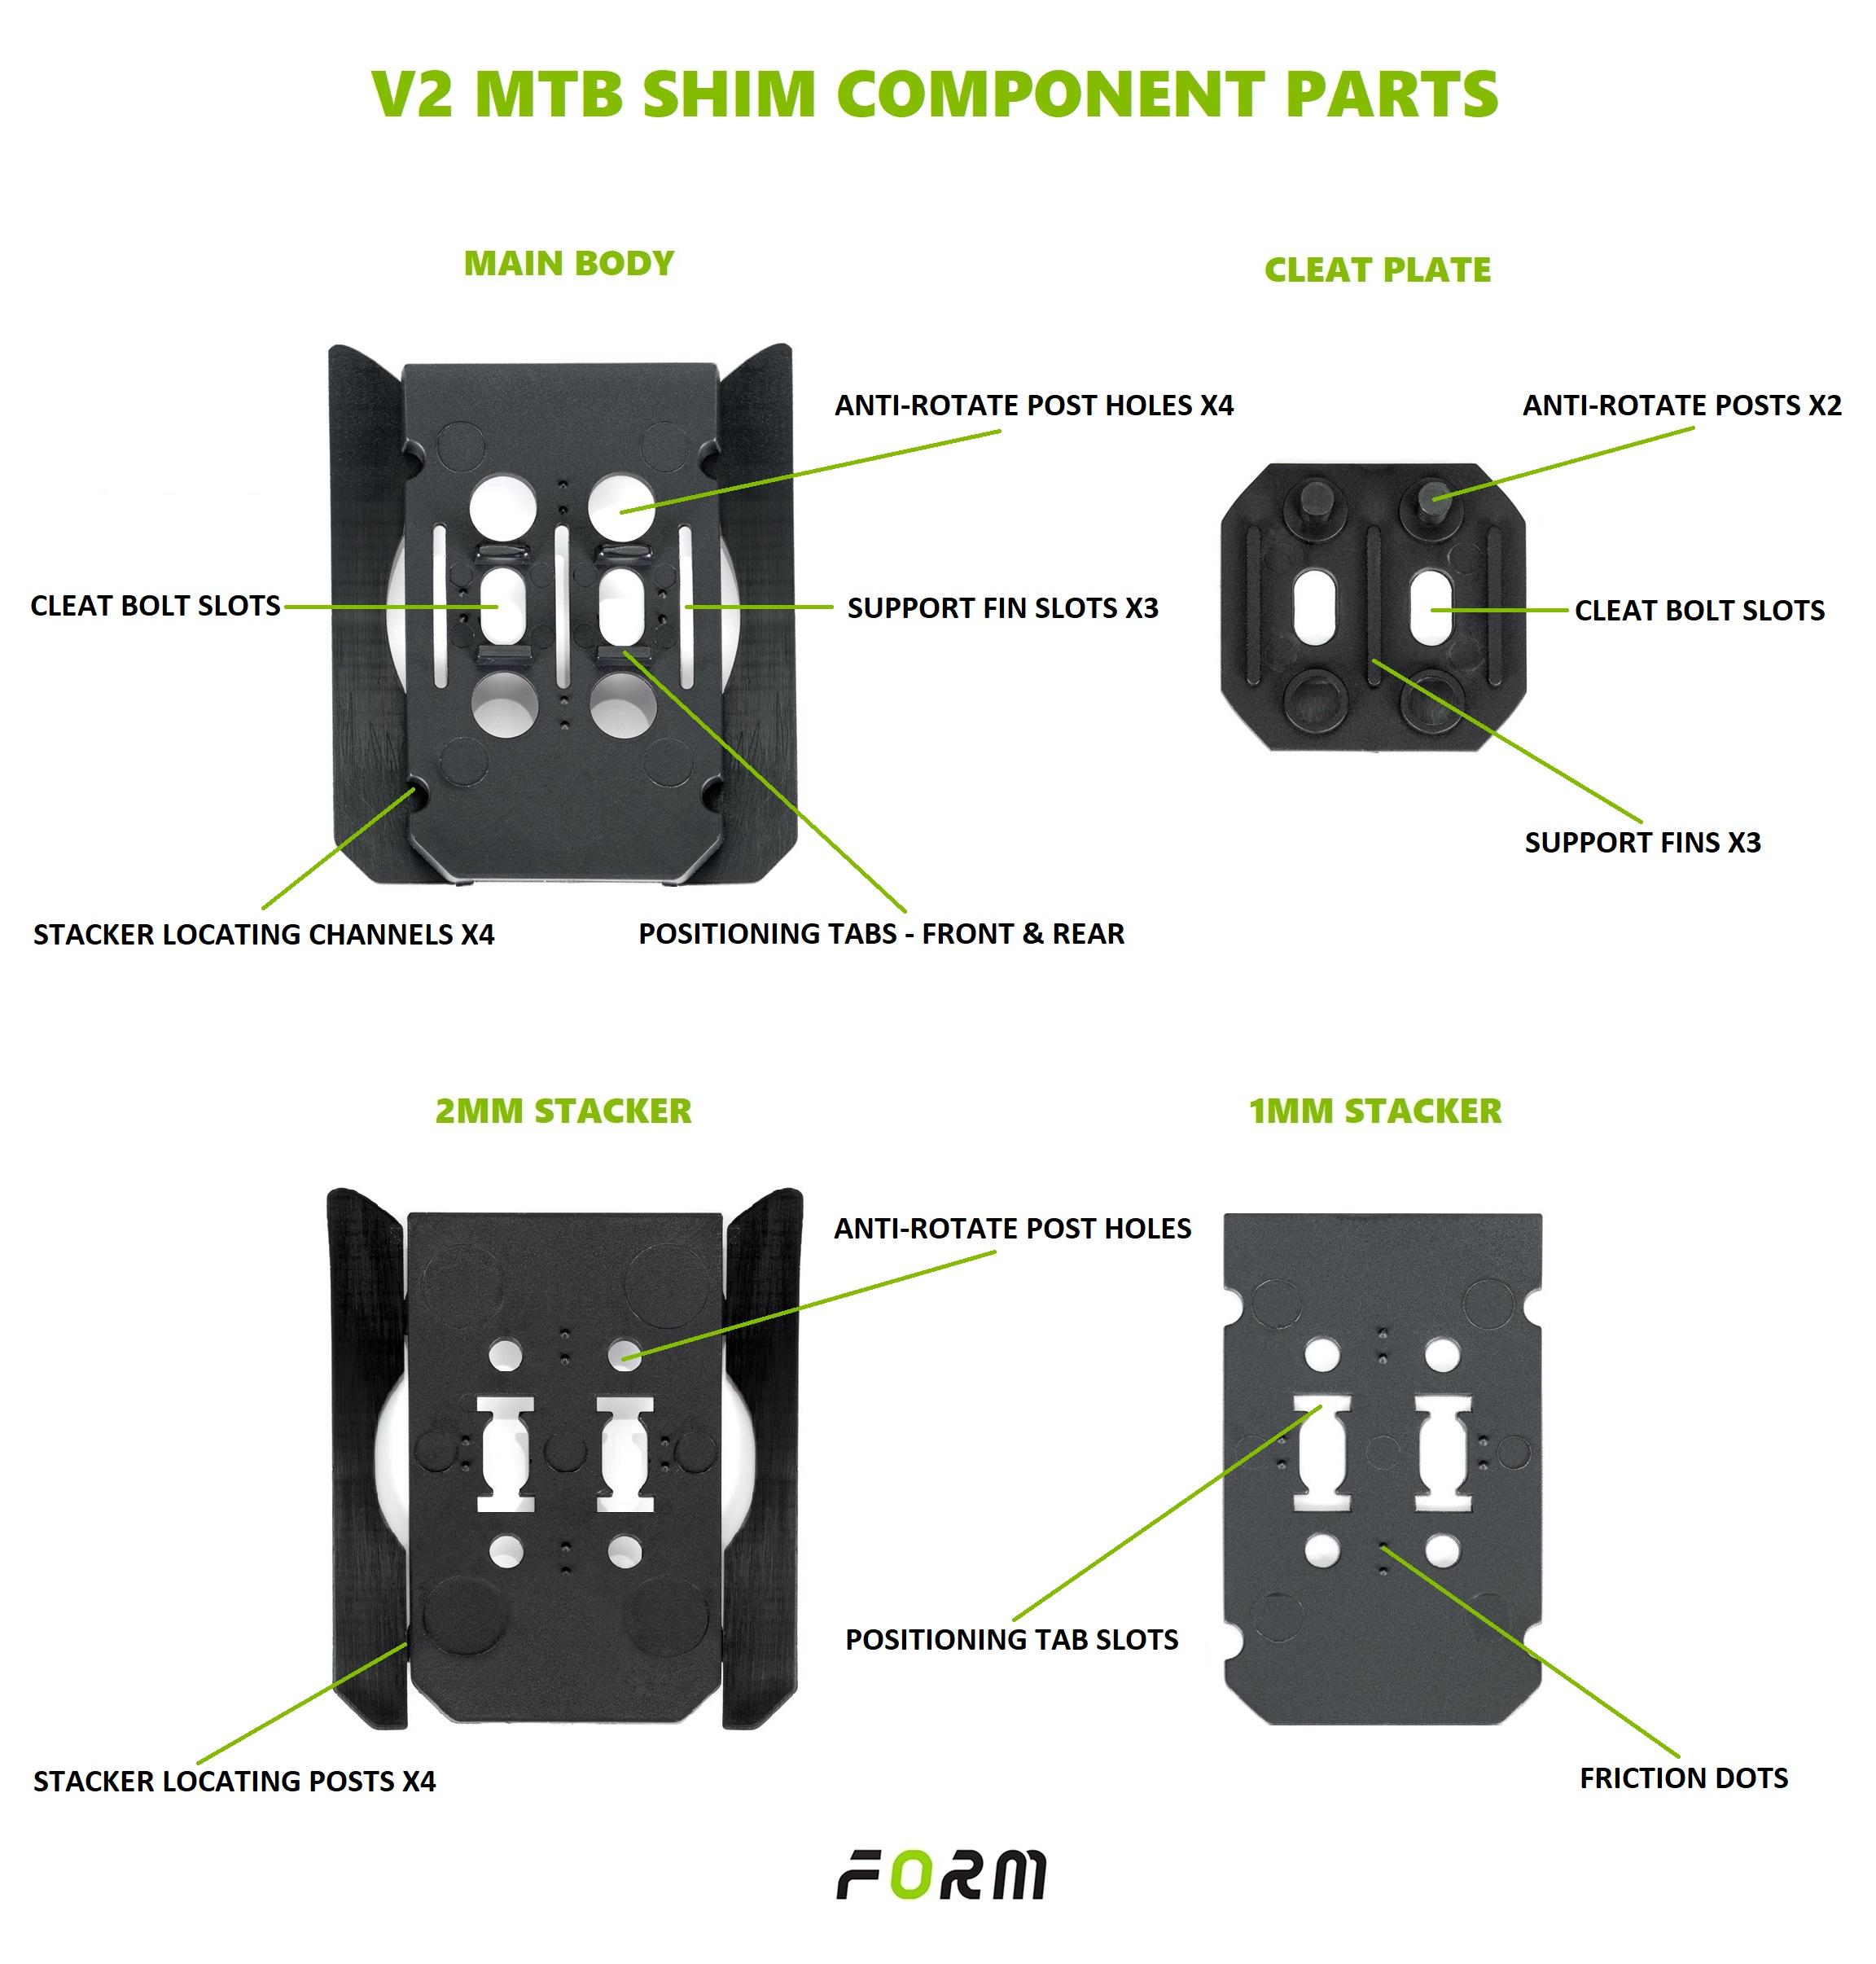 V2 MTB shim component parts